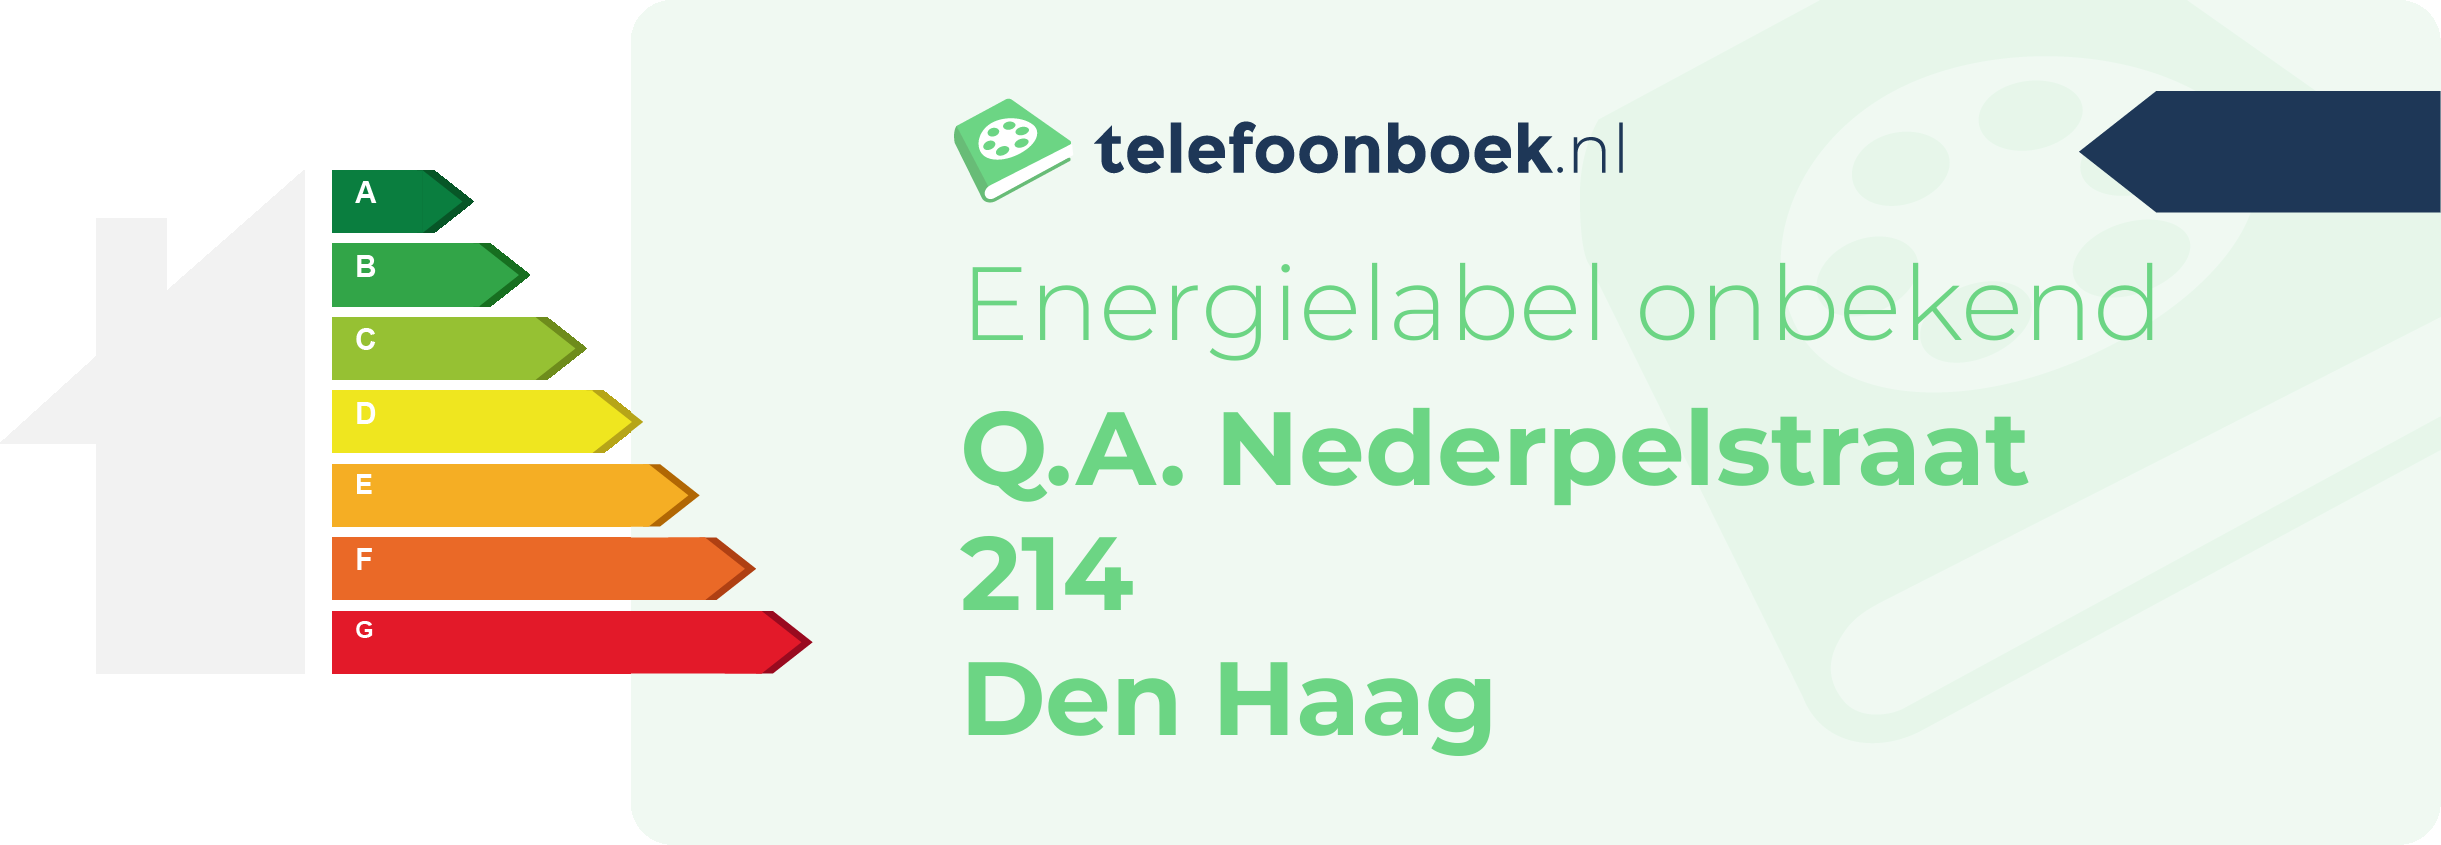 Energielabel Q.A. Nederpelstraat 214 Den Haag